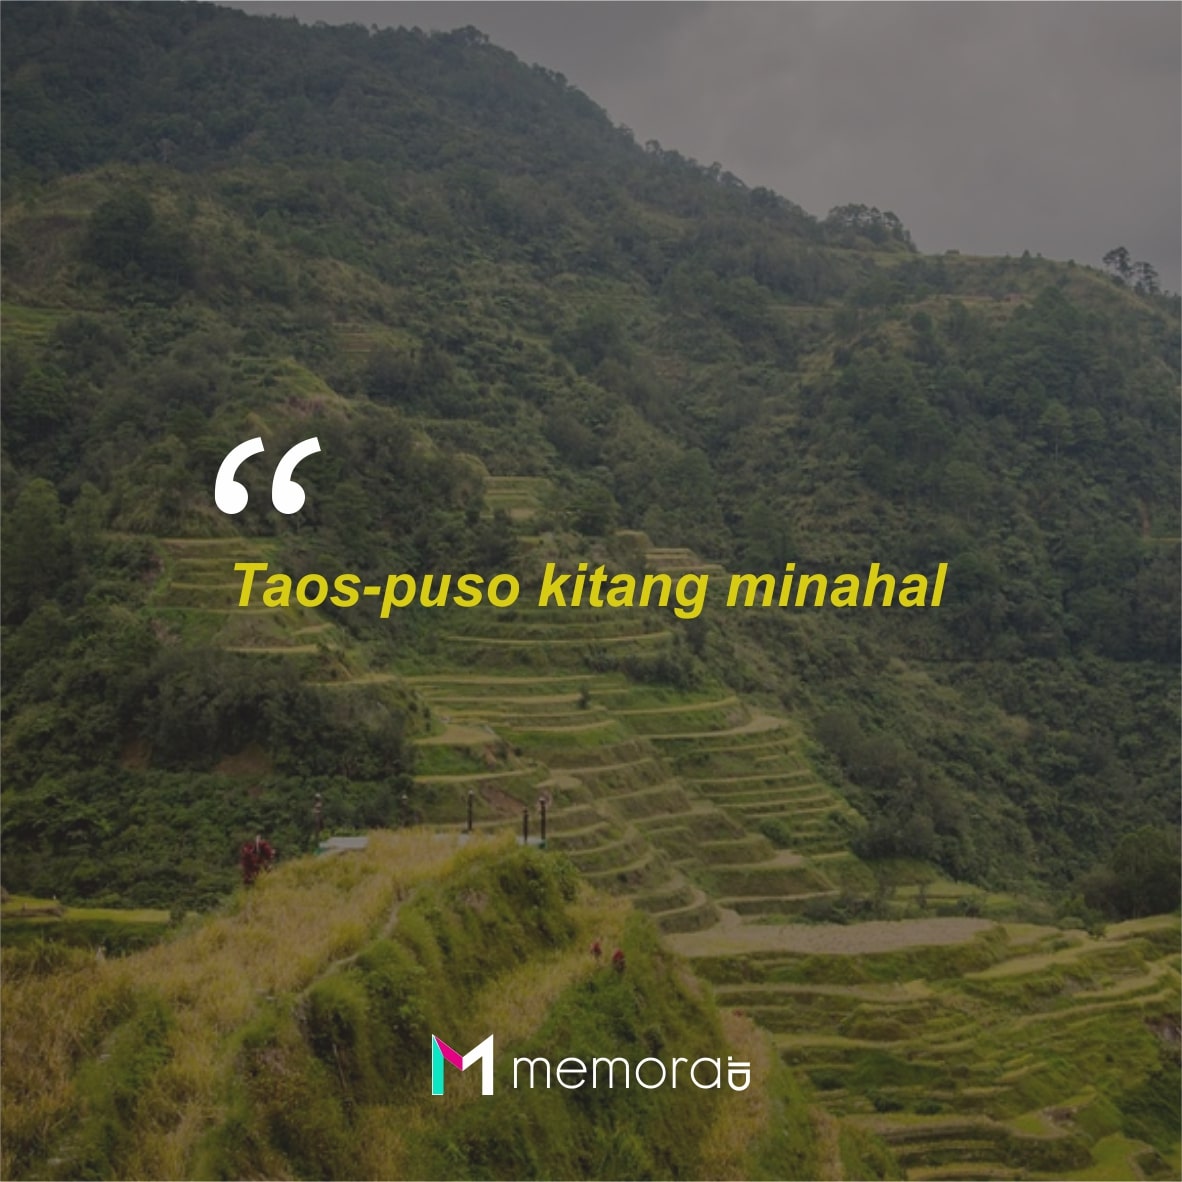 Bahasa tagalog adalah